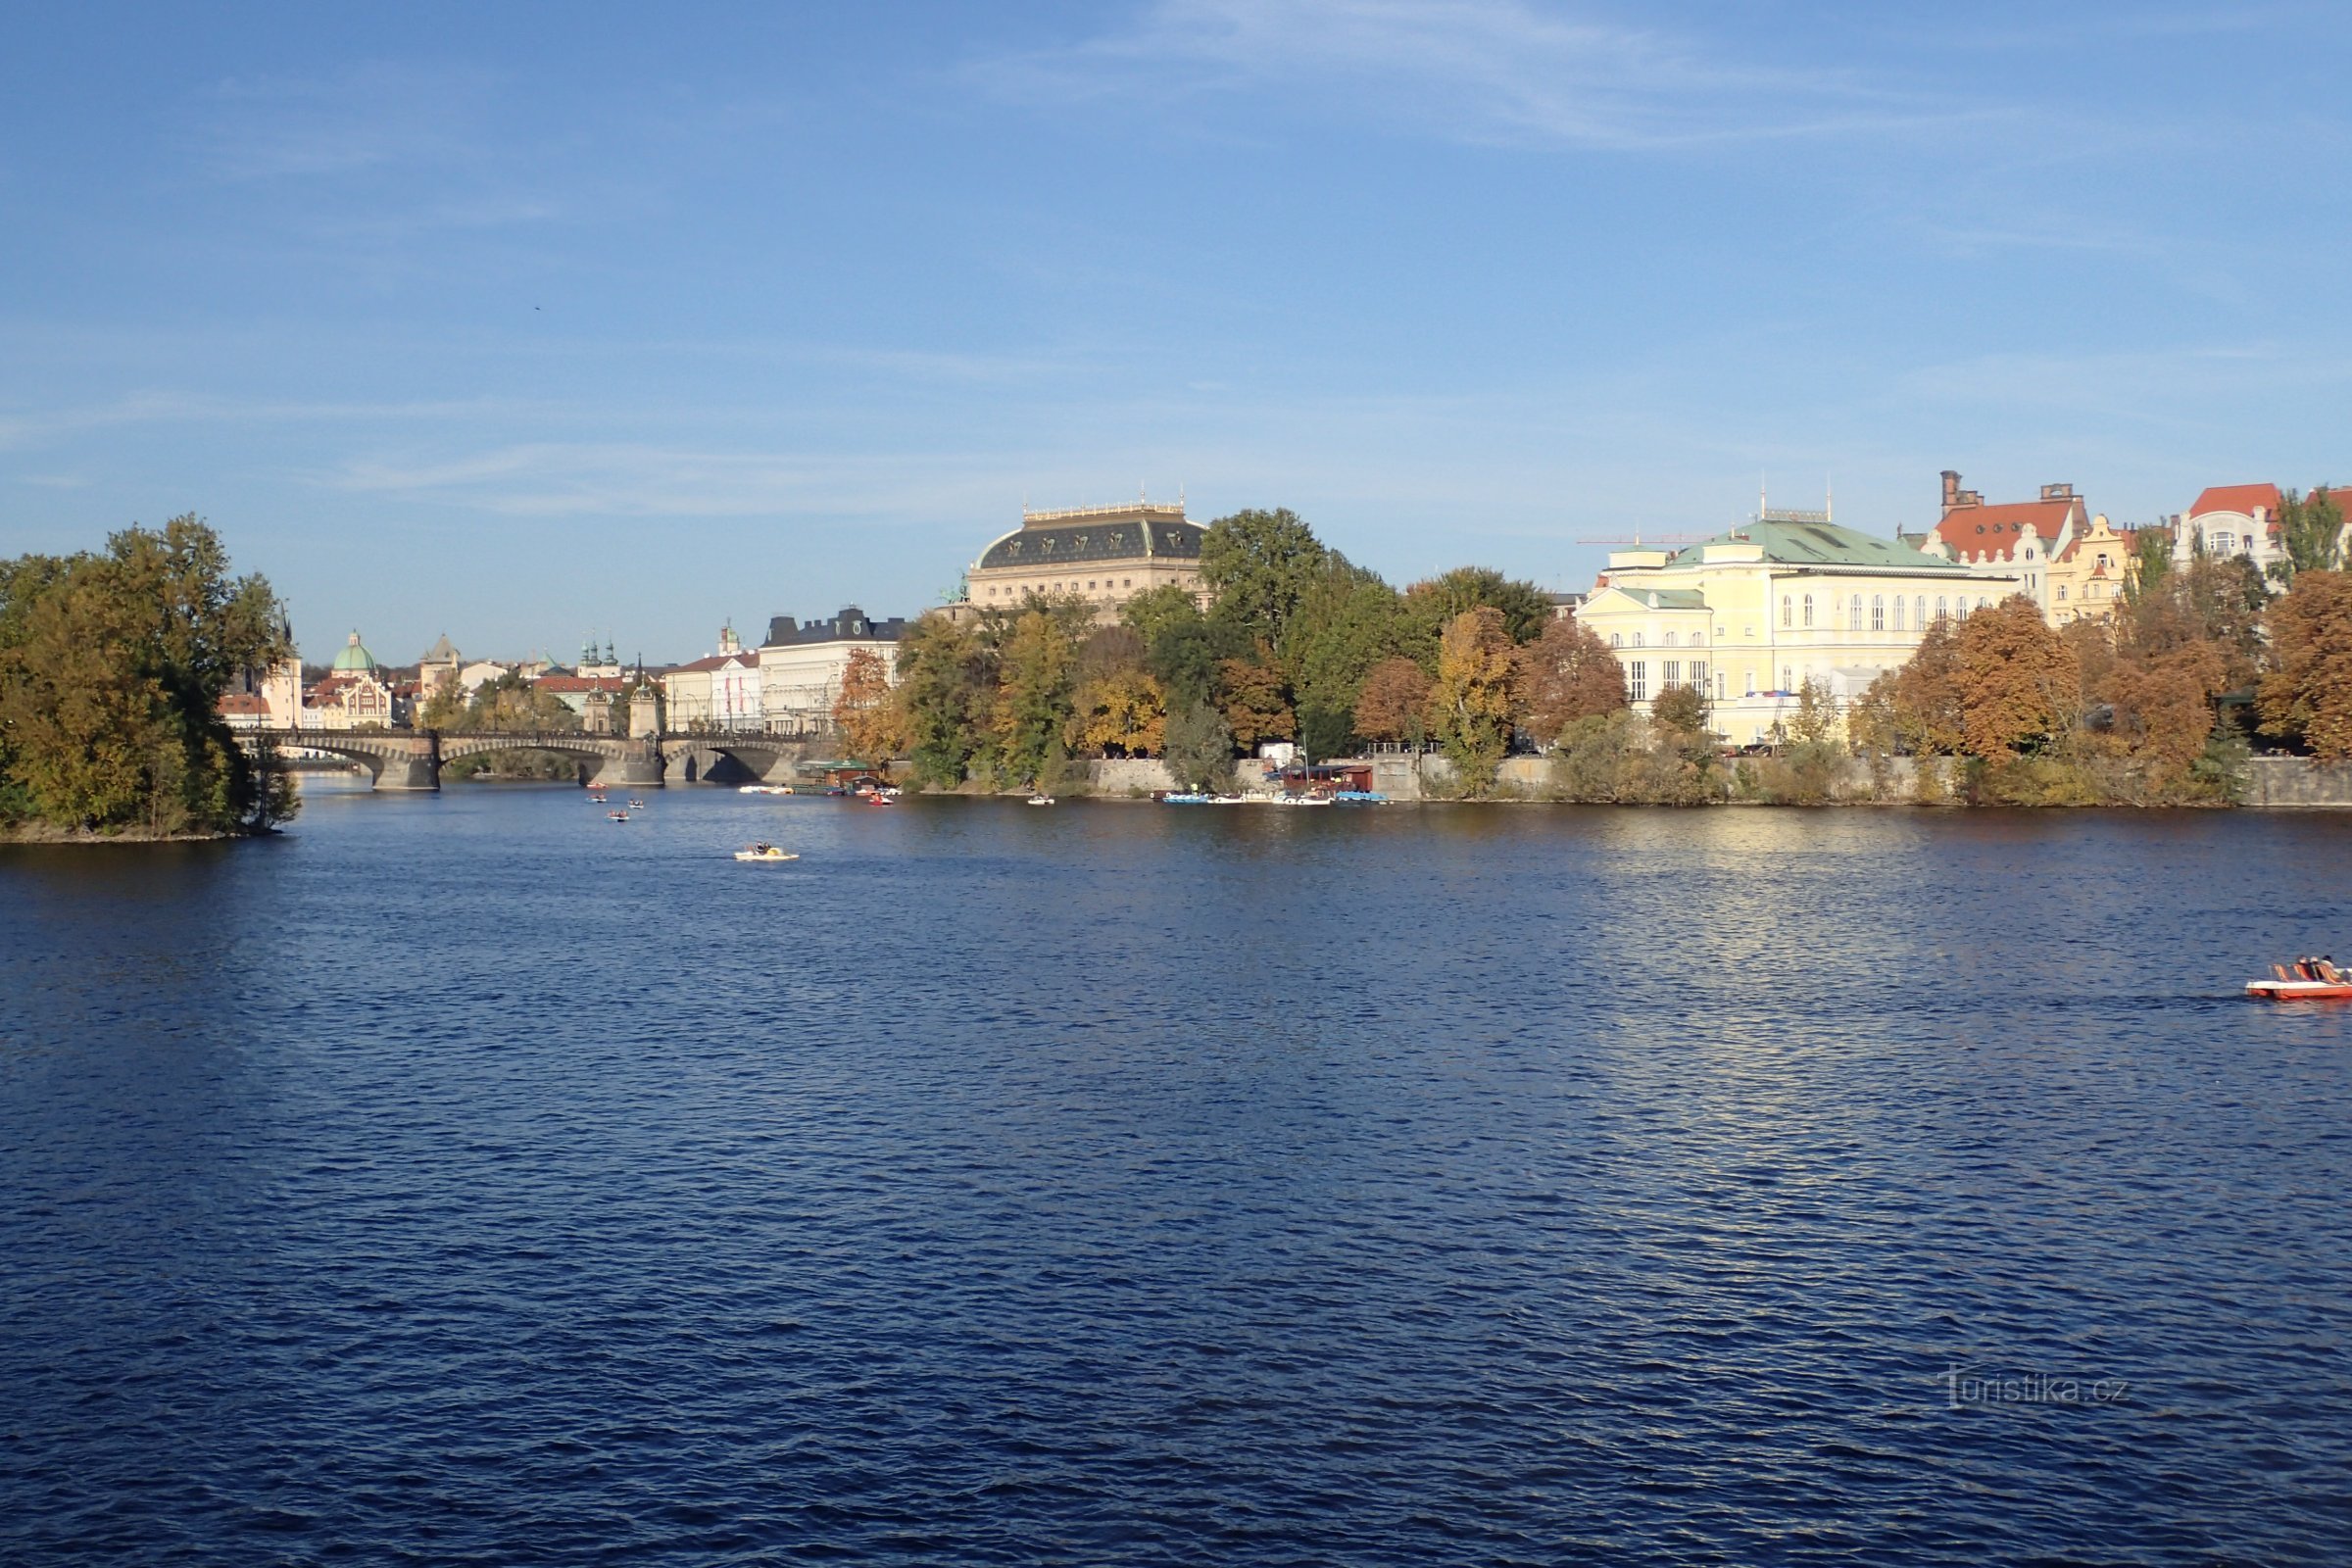 Näkymä Kansallisteatterille Vltava-joen toisella puolella.